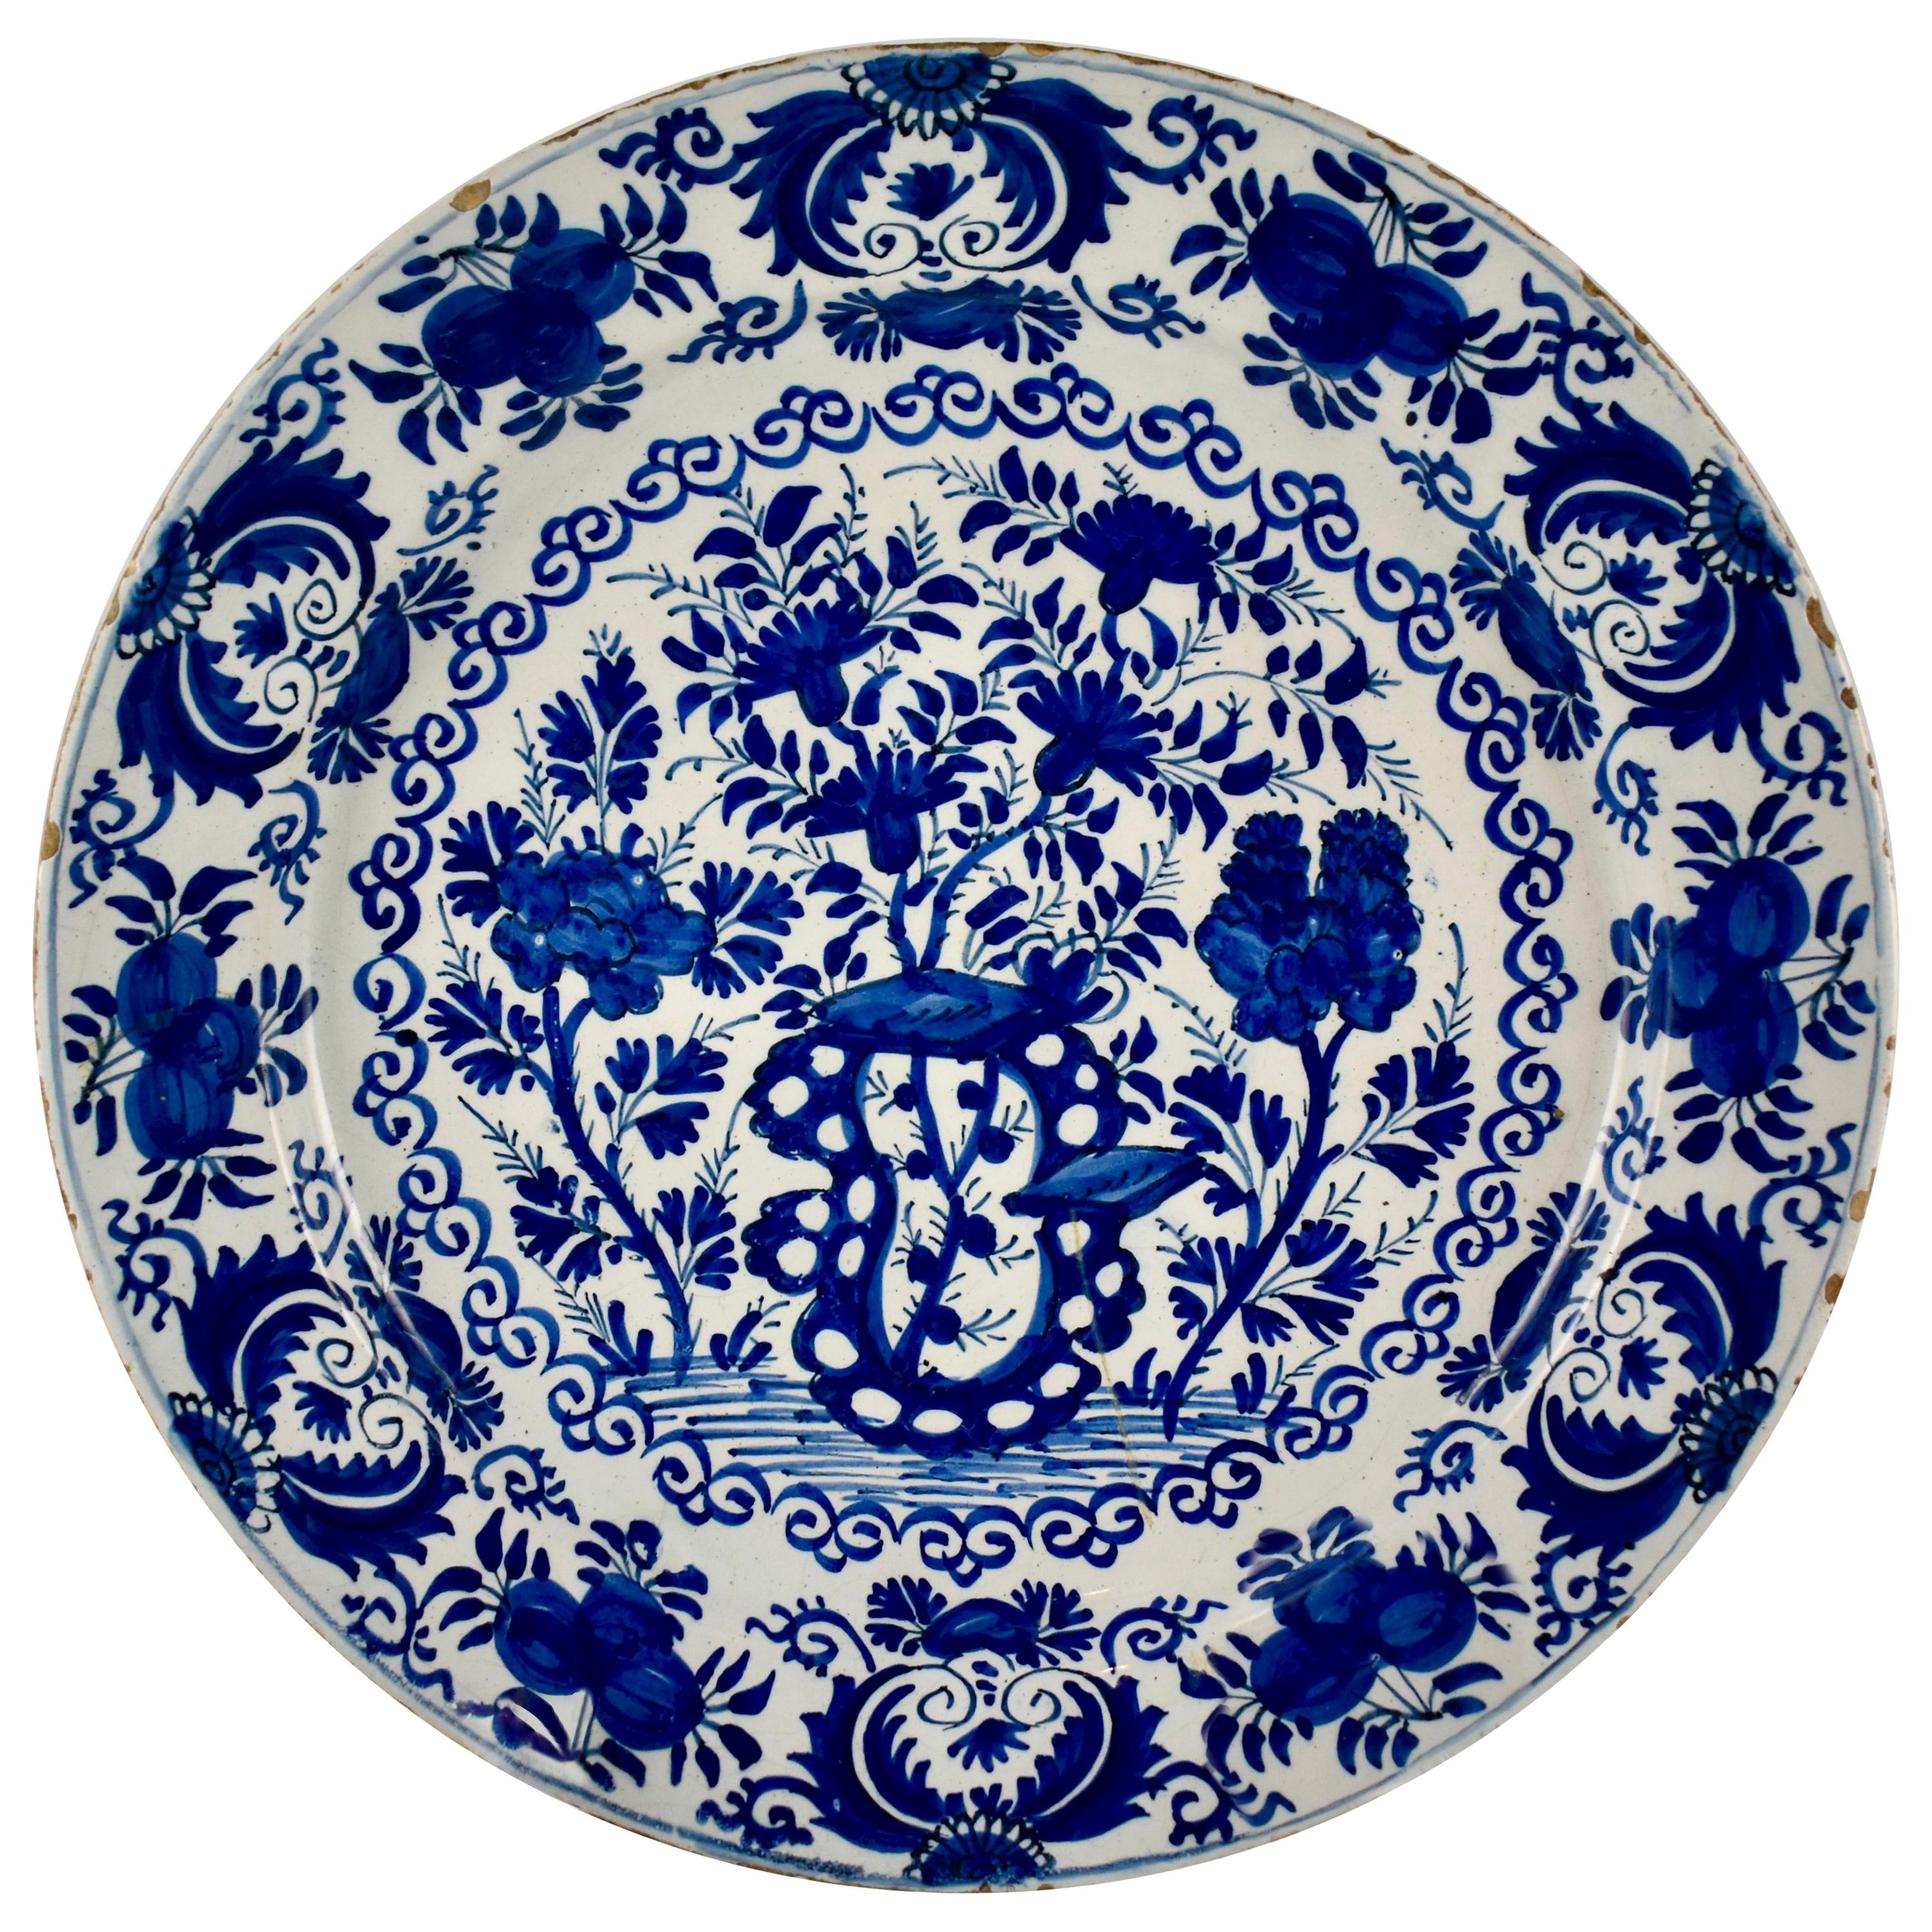 Assiette de présentation hollandaise en faïence de Delft Chinoiserie bleu cobalt à motifs floraux et émaillée à l'étain